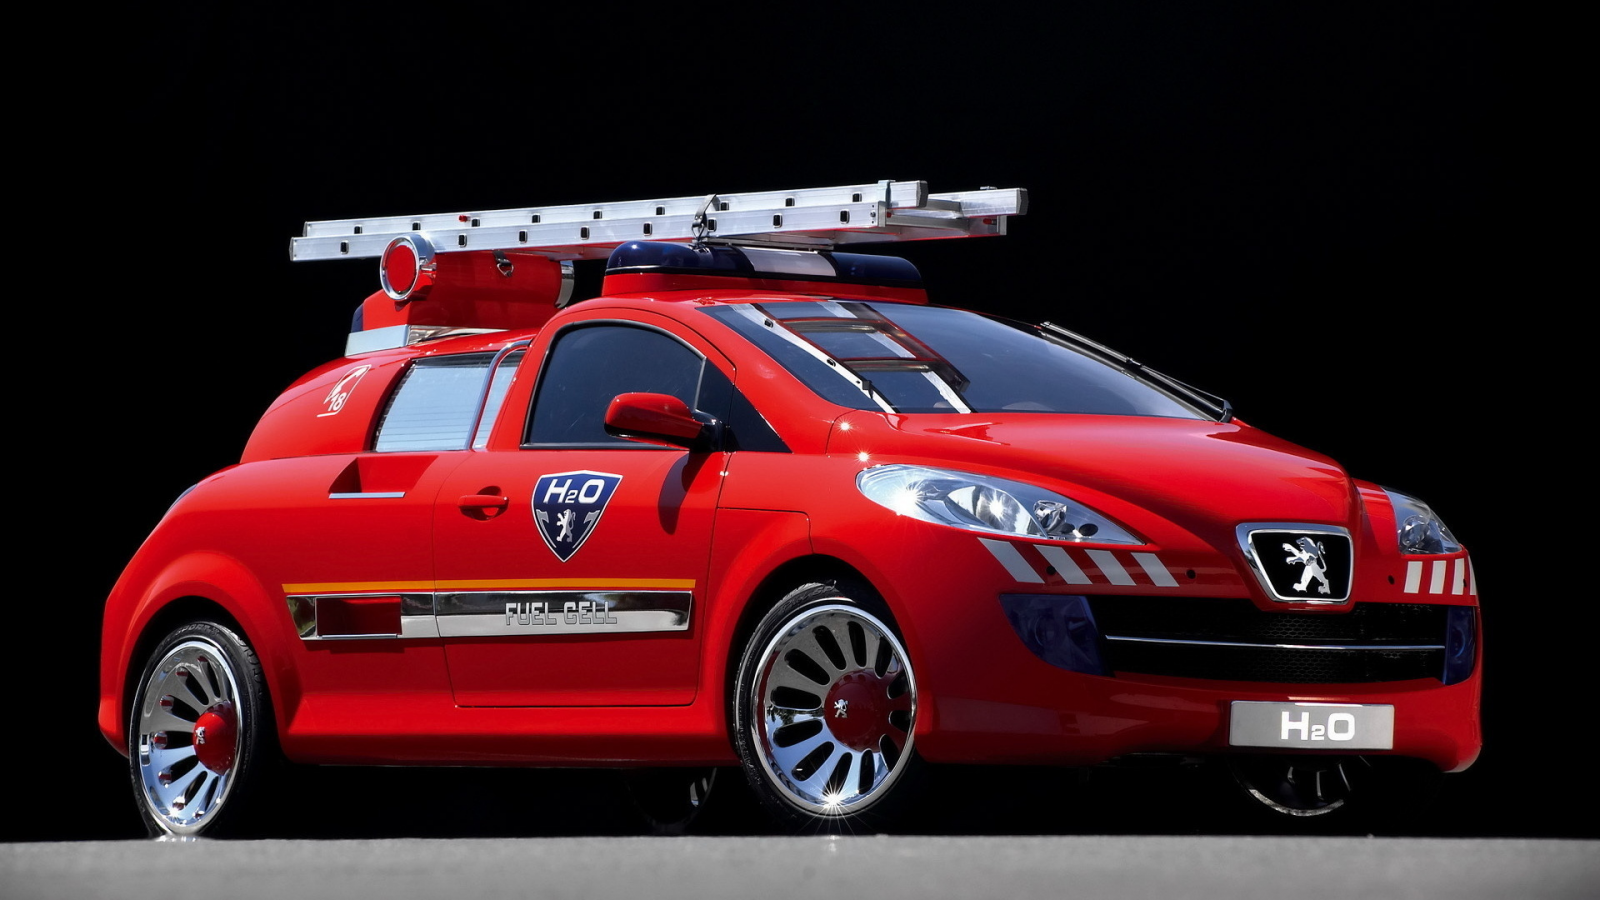 легковой пожарный автомобиль, h2o, пежо, concept, peugeot, красный, мигалки, лестница